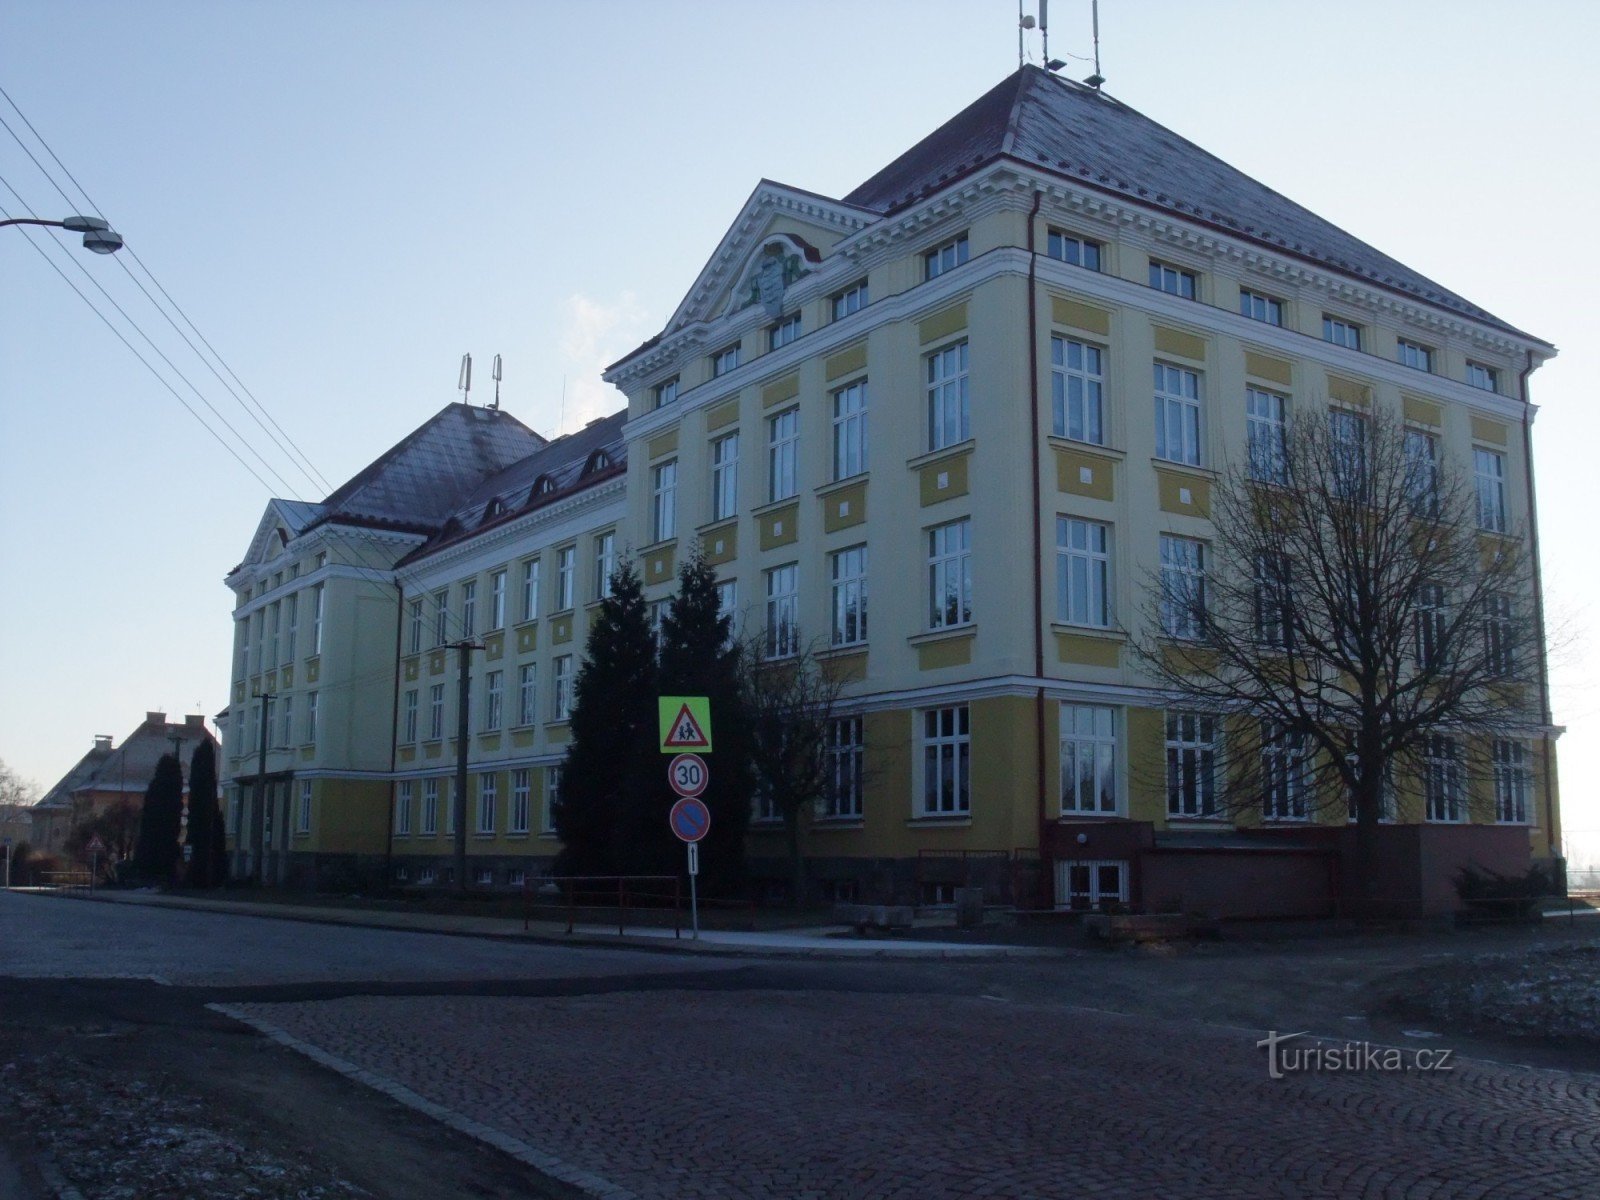 3. osnovna škola, Okružní ulica, Aš. Desno od zgrade je staza koja vodi do Benešove paloučke